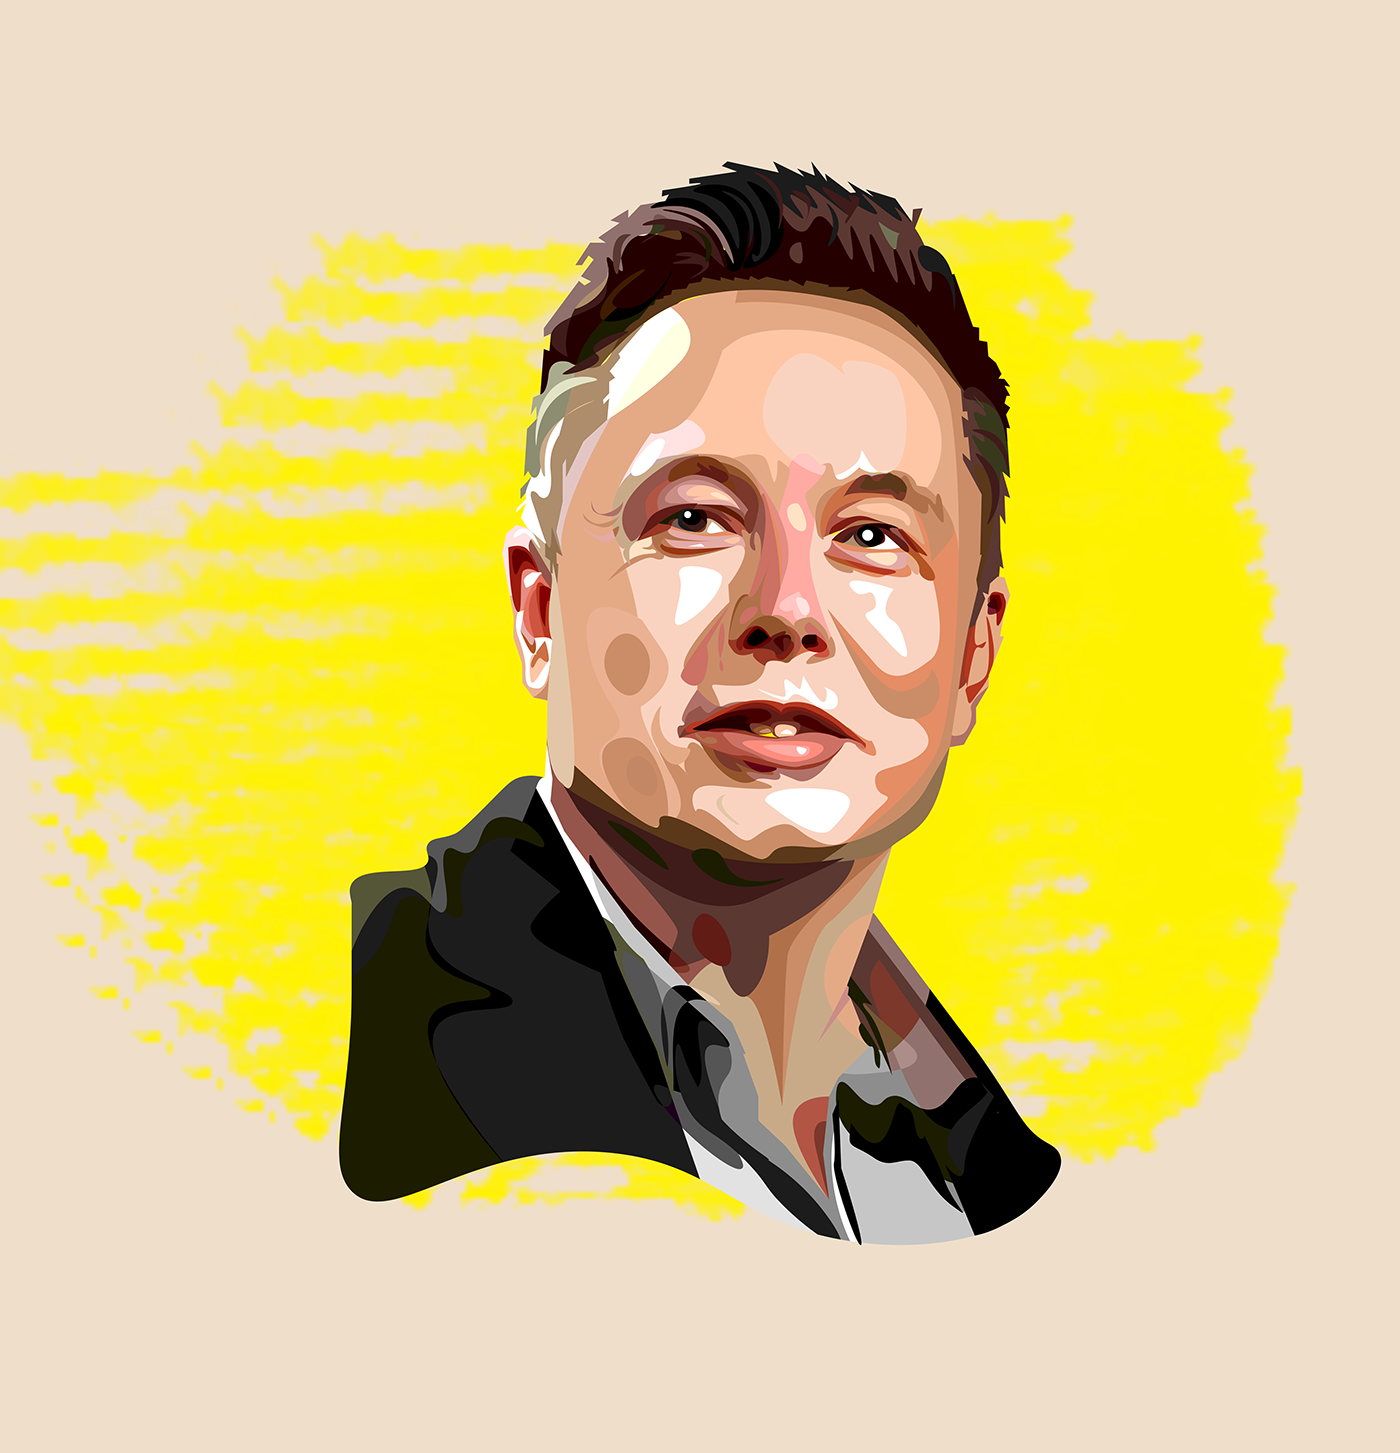 Elon musk pop art cartoon on Behance